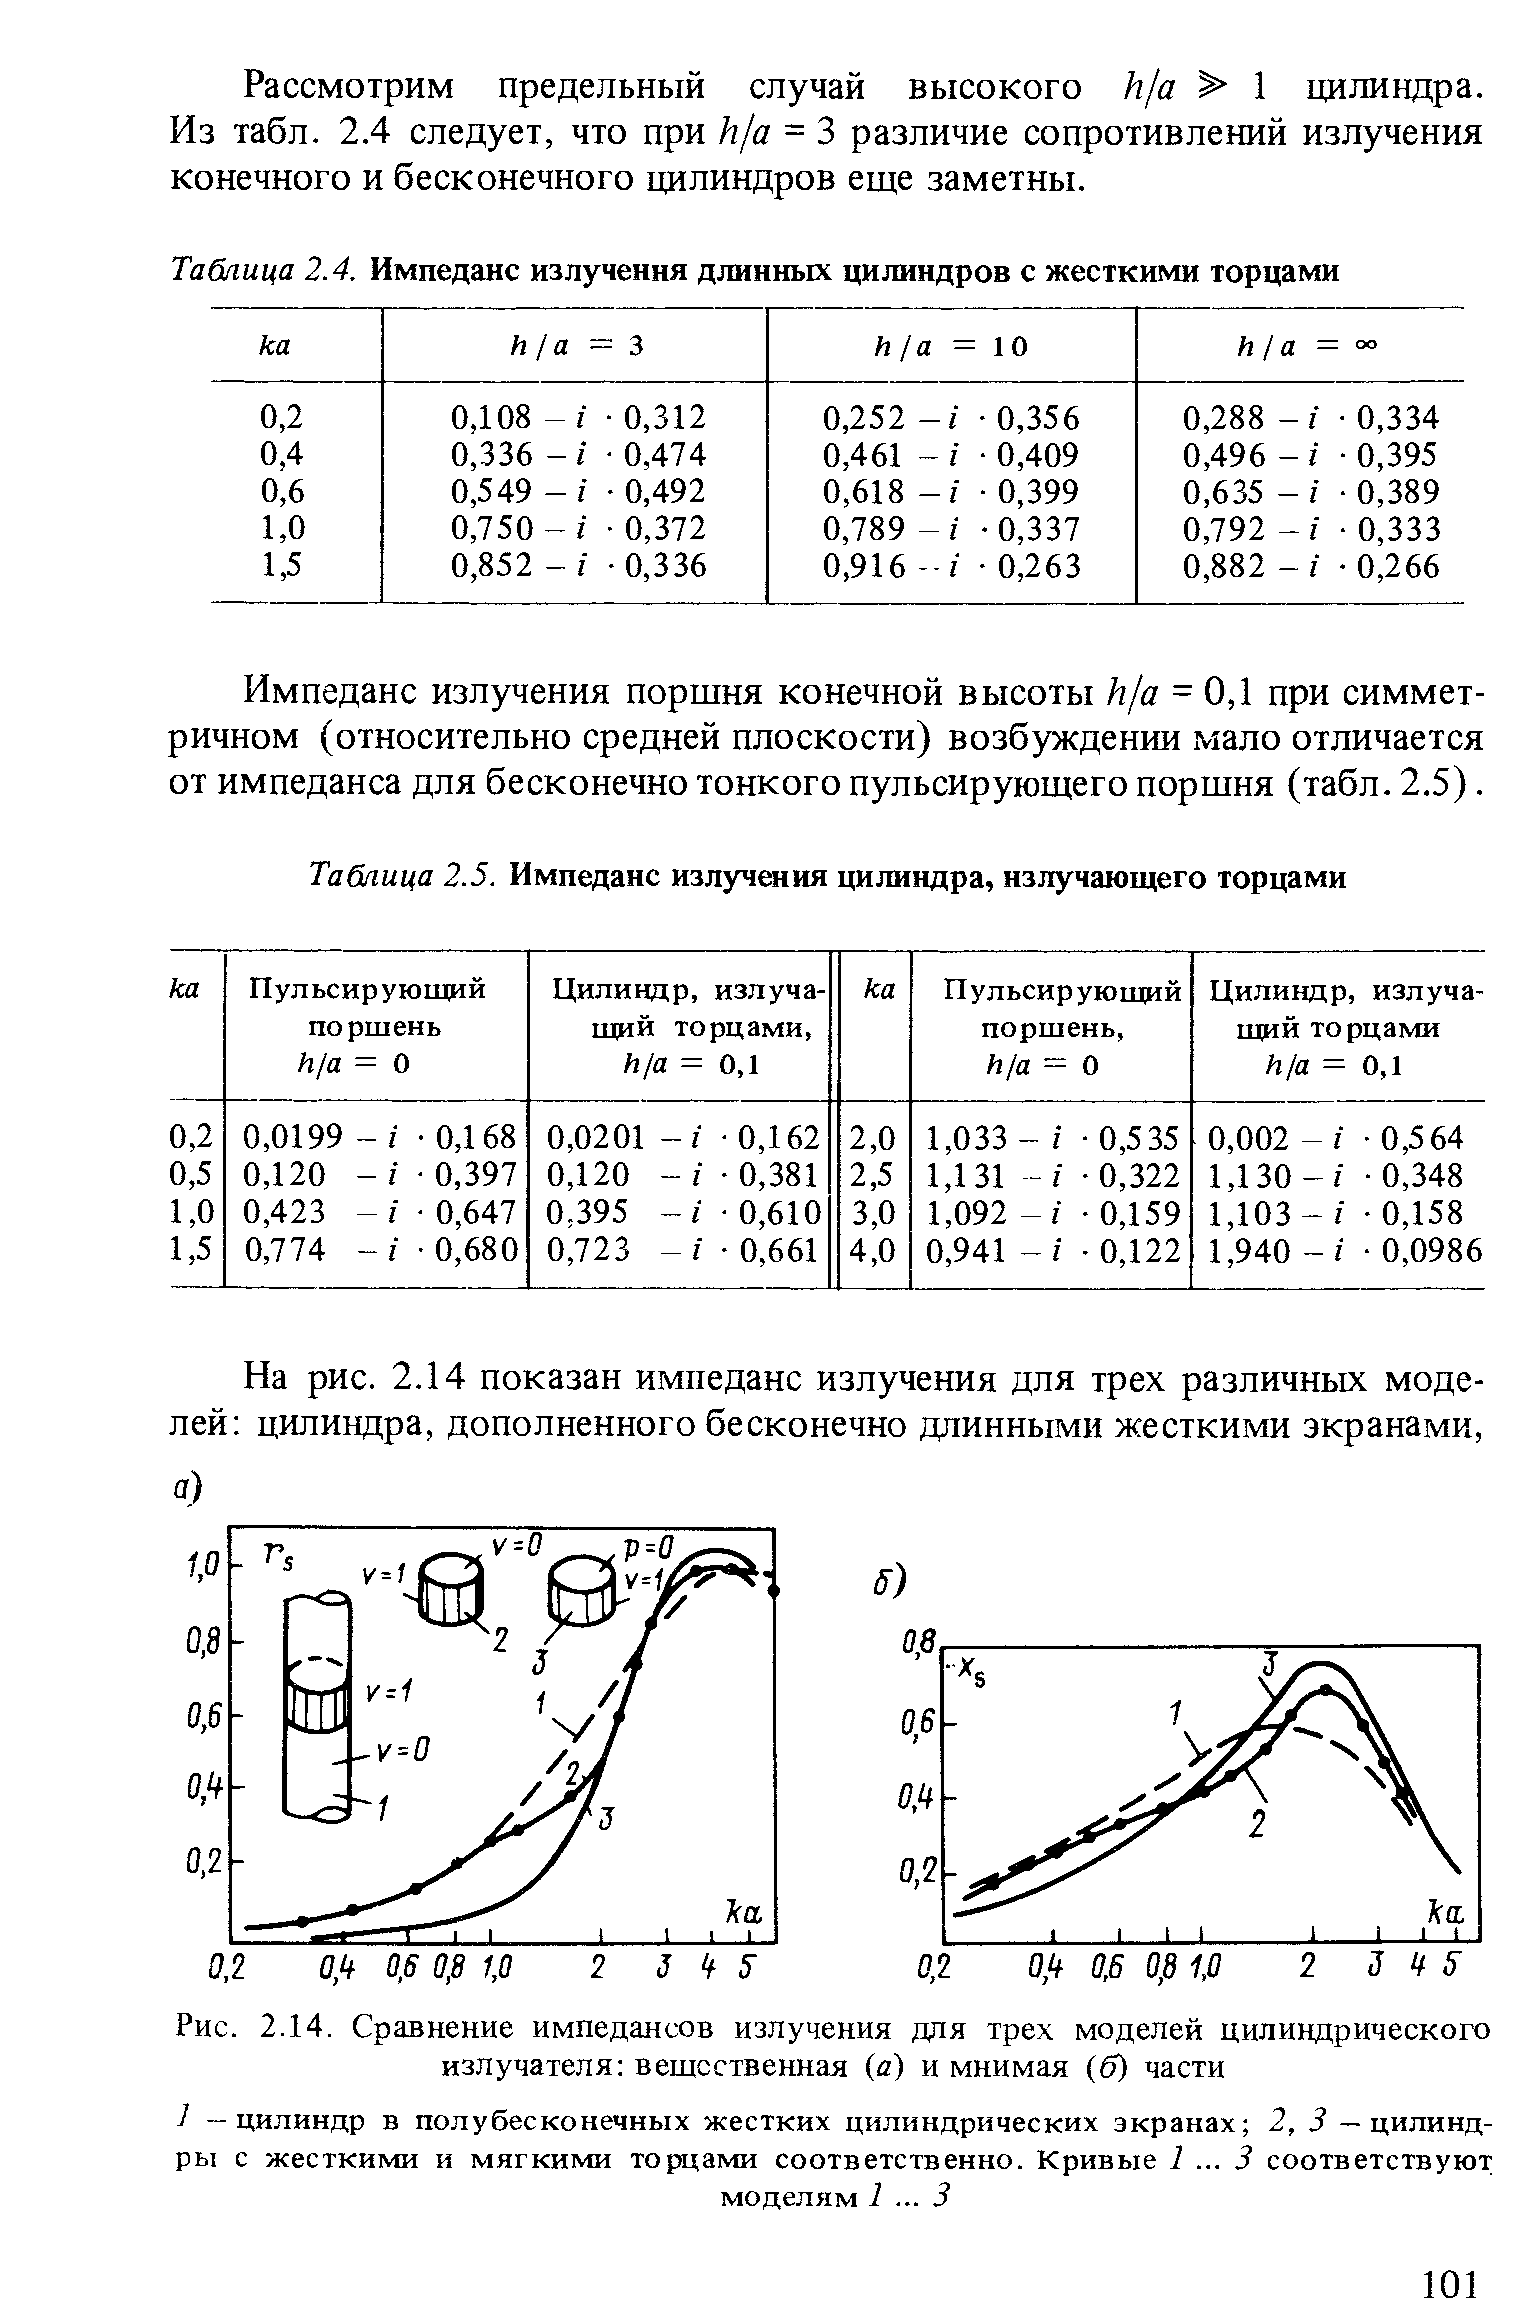 Рис. 2.14. Сравнение <a href="/info/394828">импедансов излучения</a> для трех моделей цилиндрического излучателя вещественная (а) и мнимая (б) части
